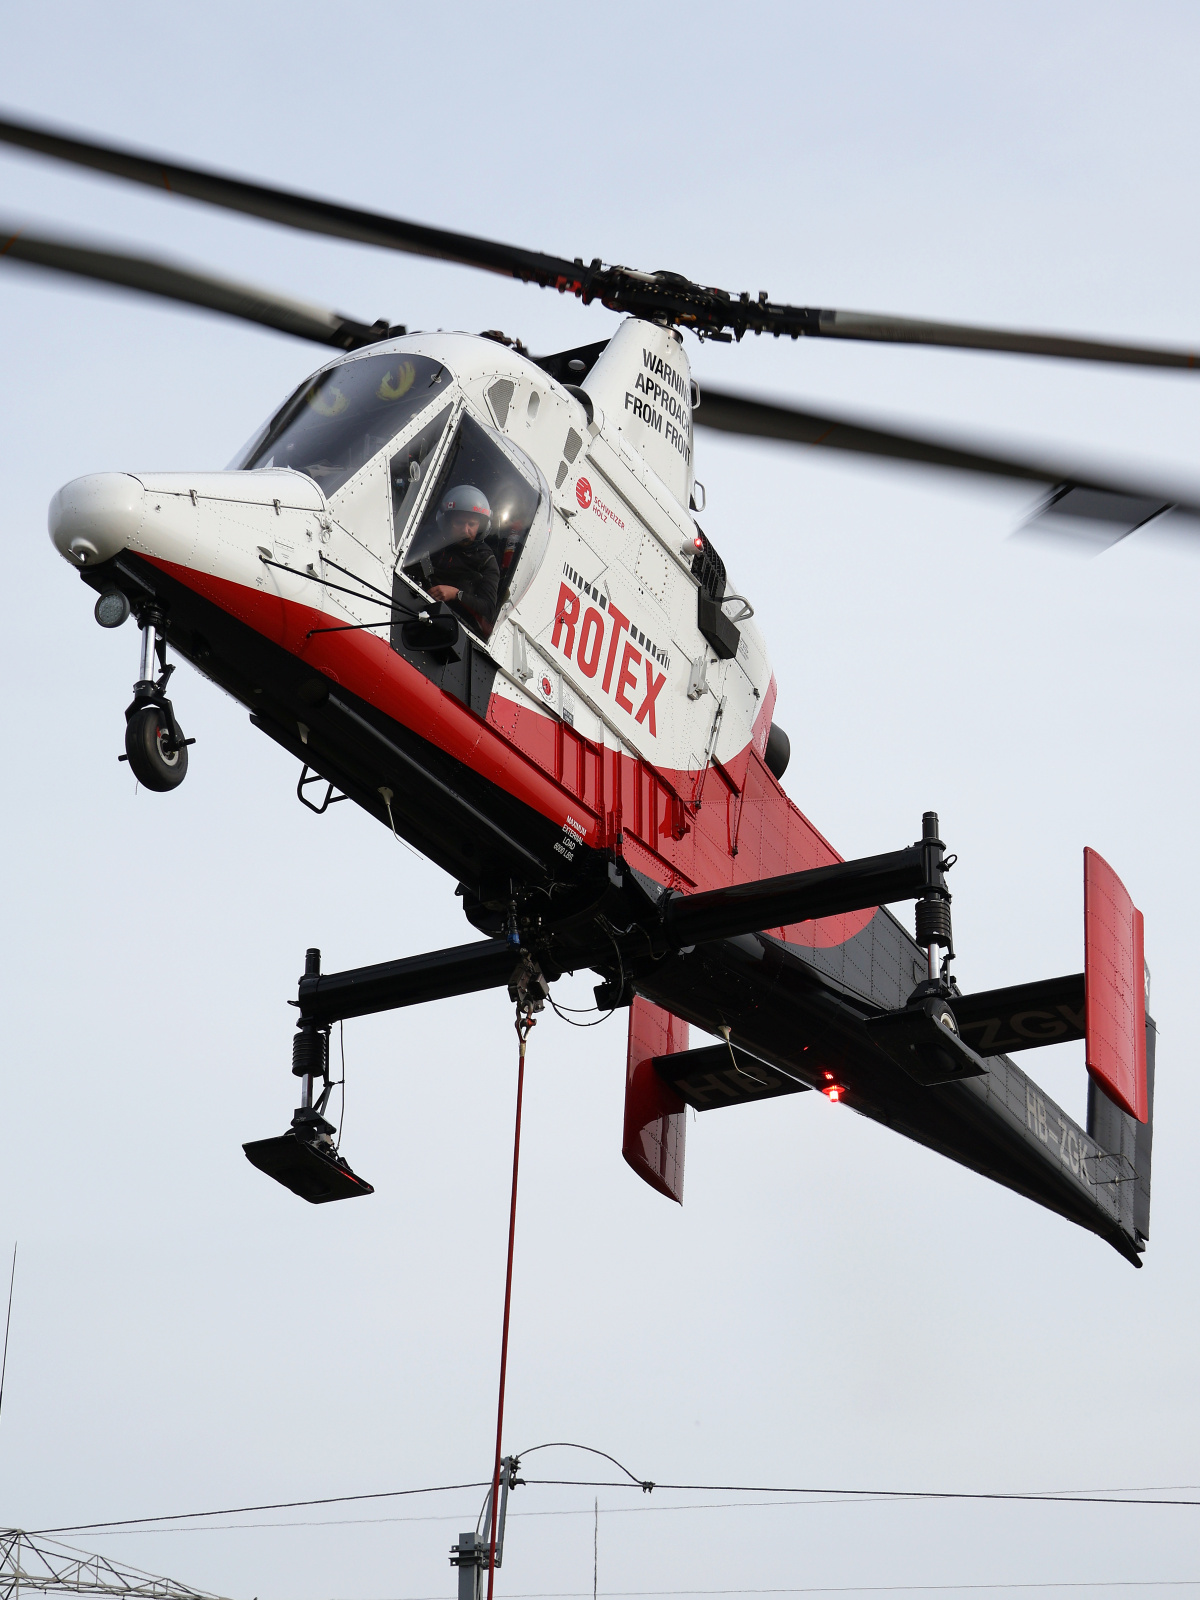 HB-ZGK, Rotex Helicopter (Aircraft » Kaman K-1200 K-MAX)